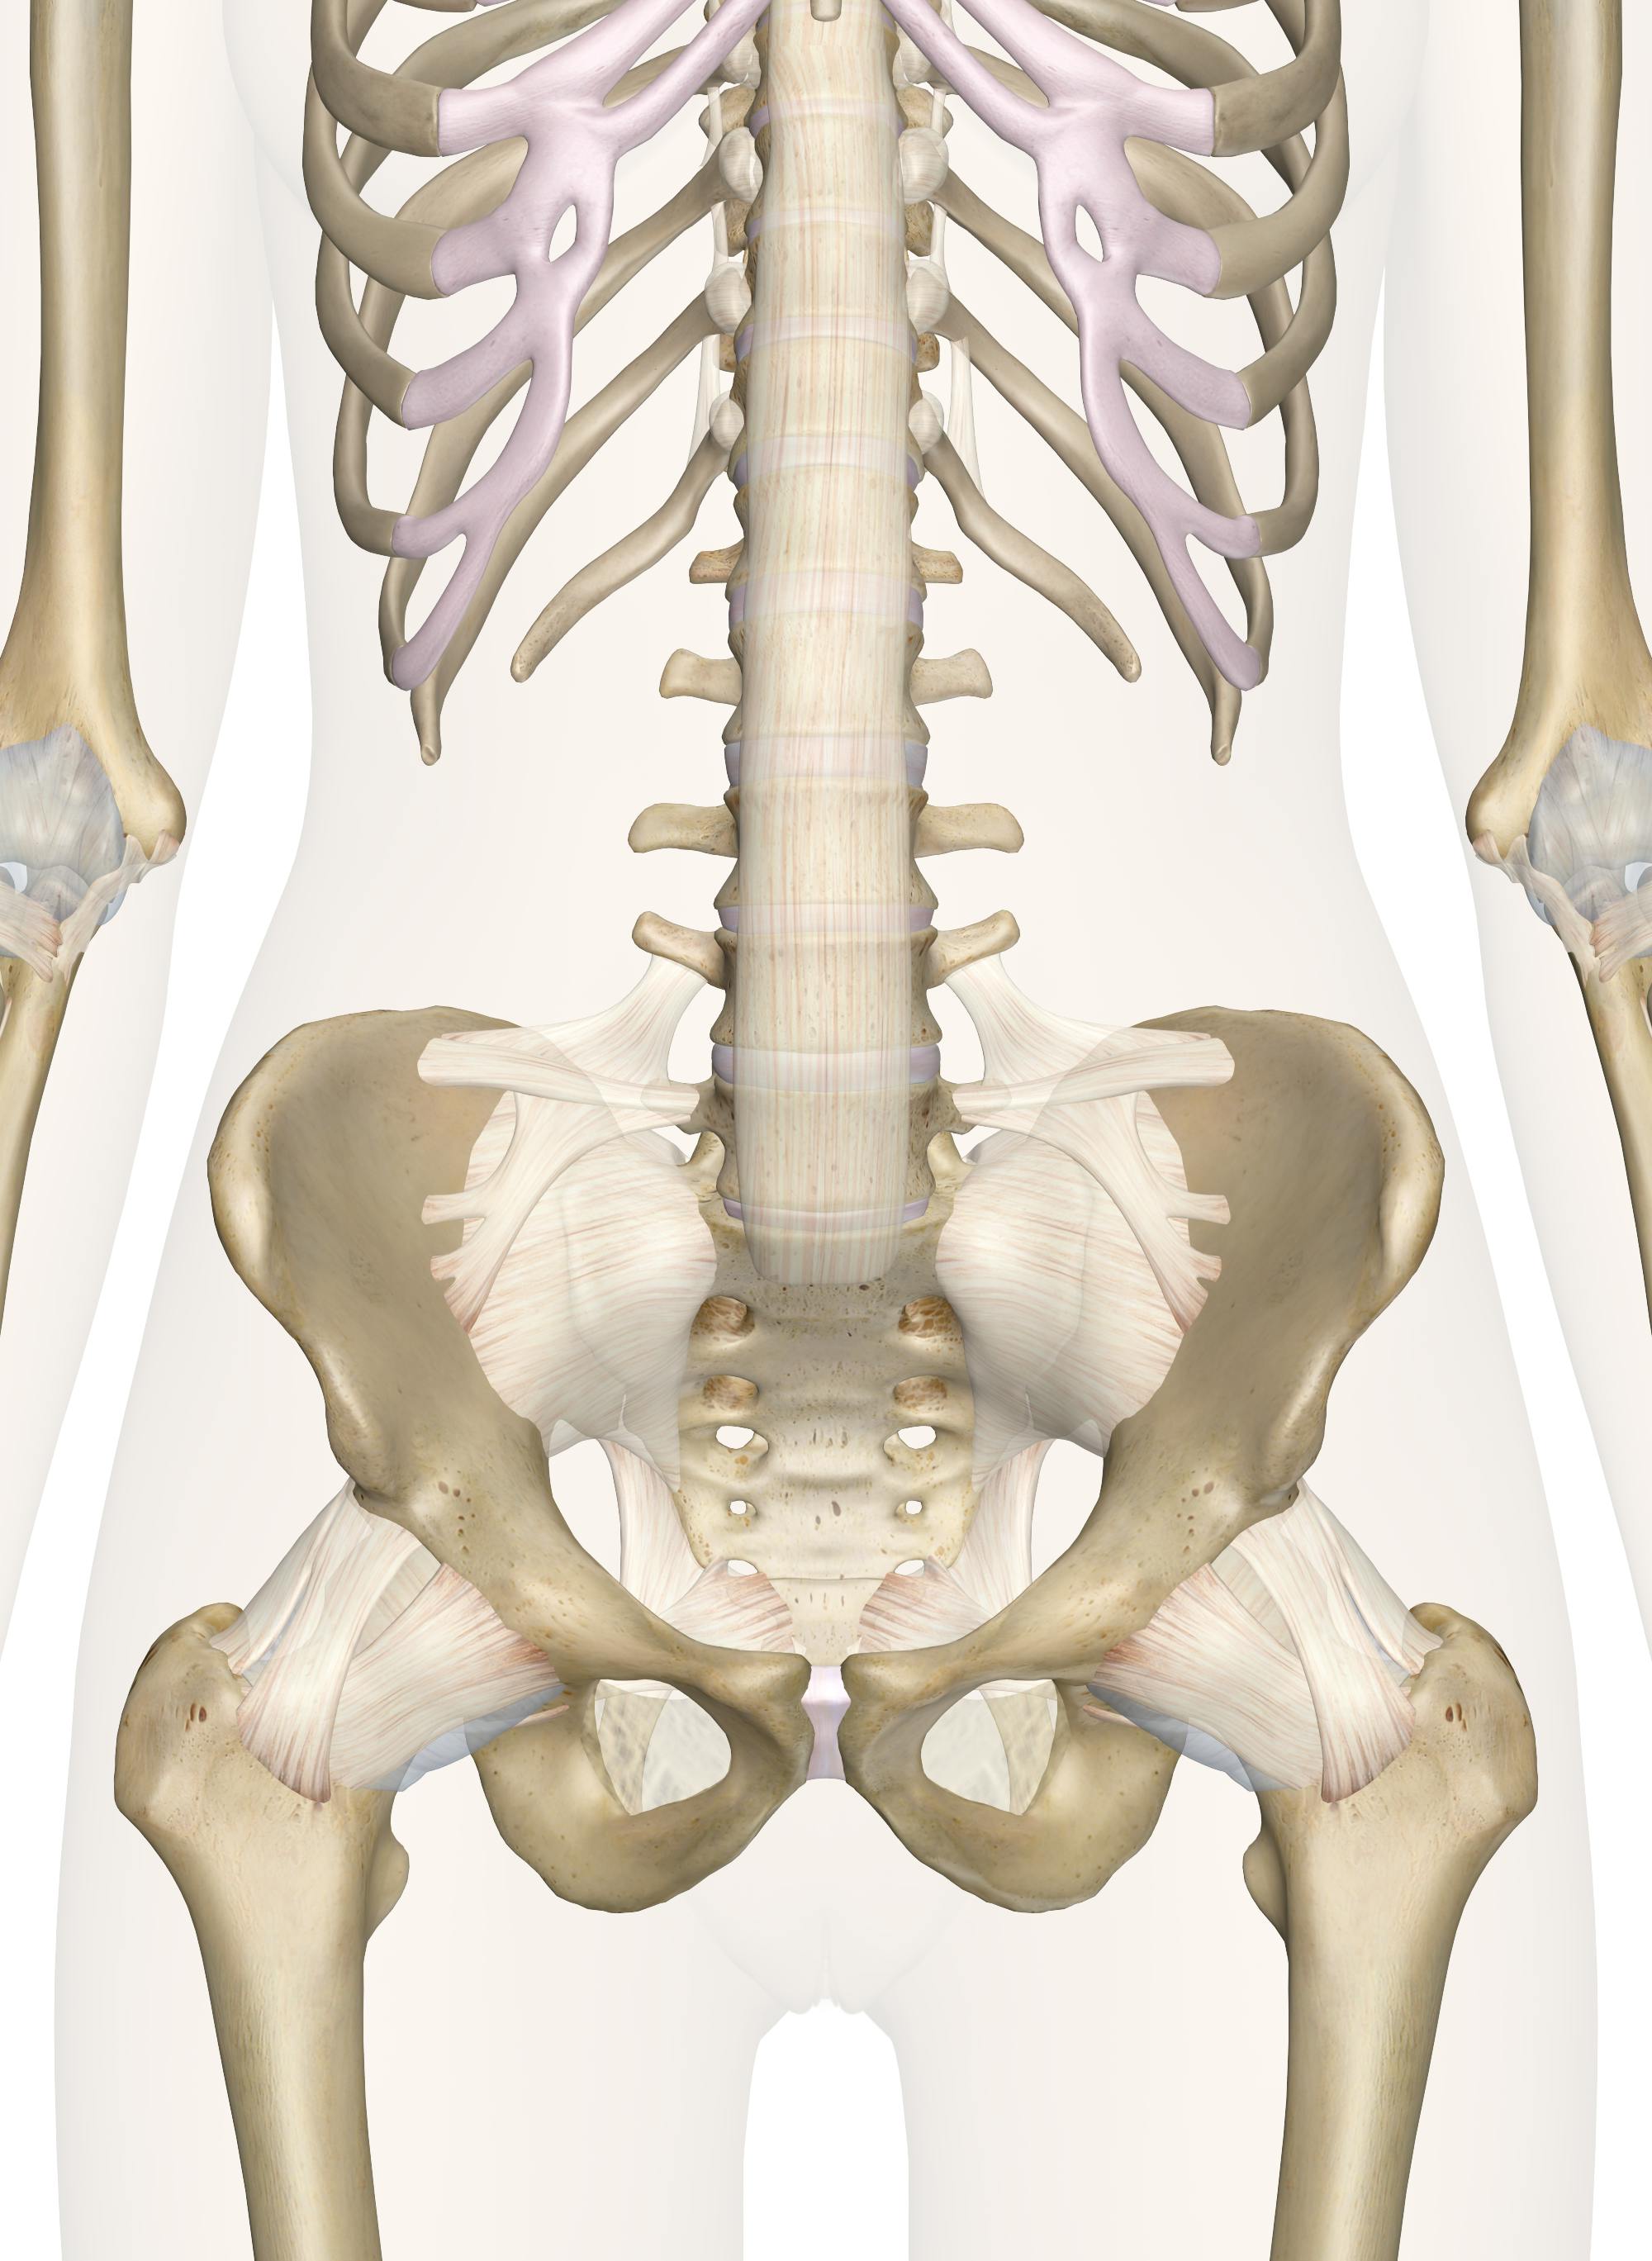 is the pelvis a flat bone